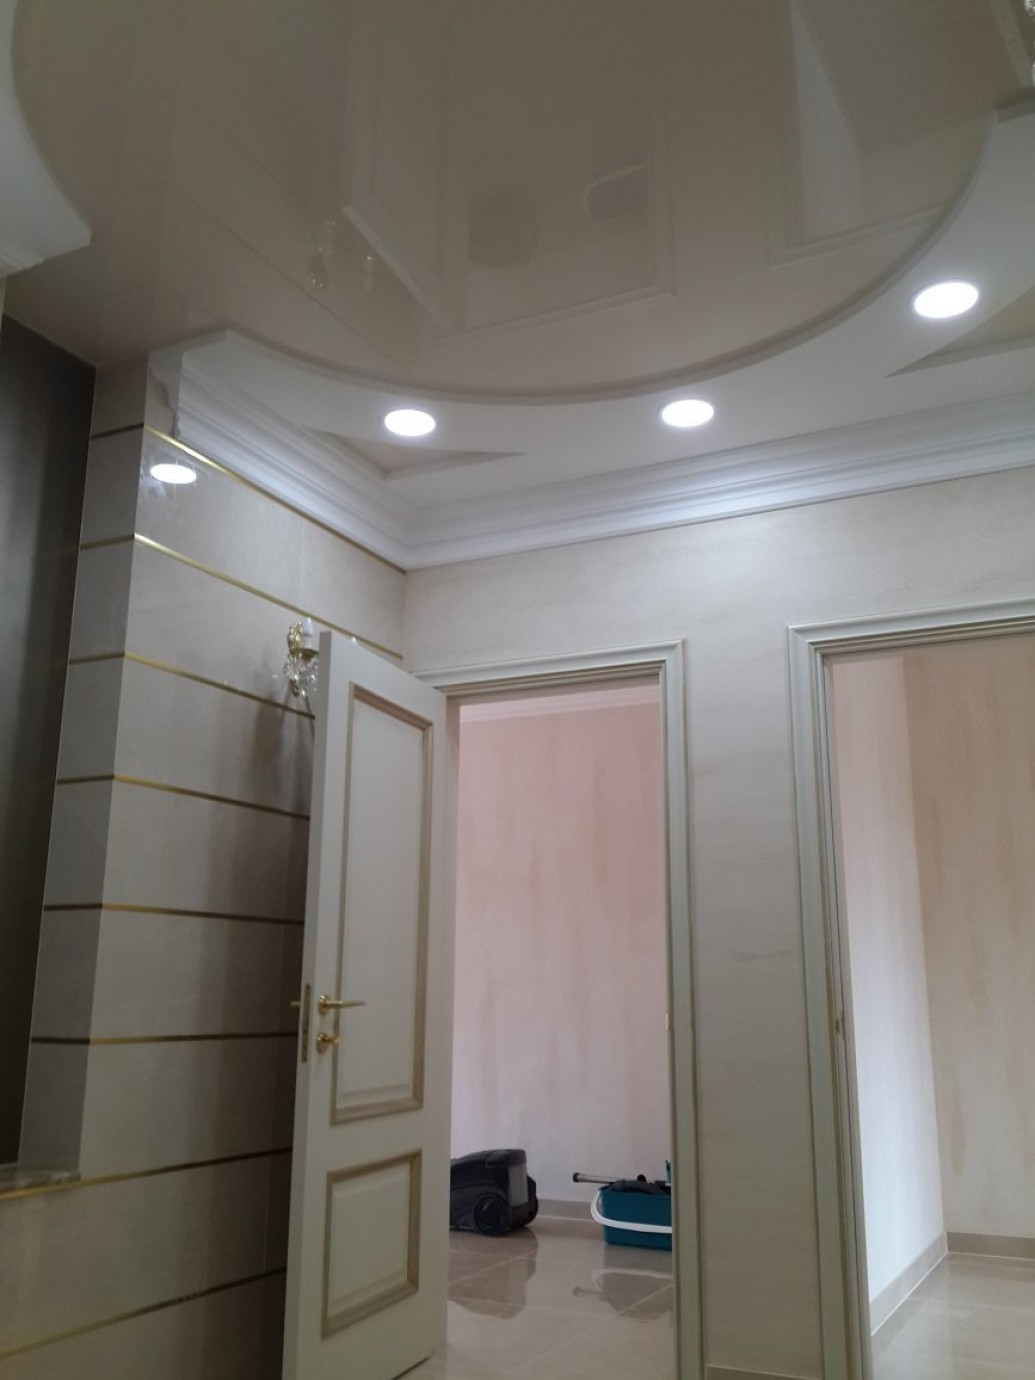   LED-споты потолок офиса классический стиль